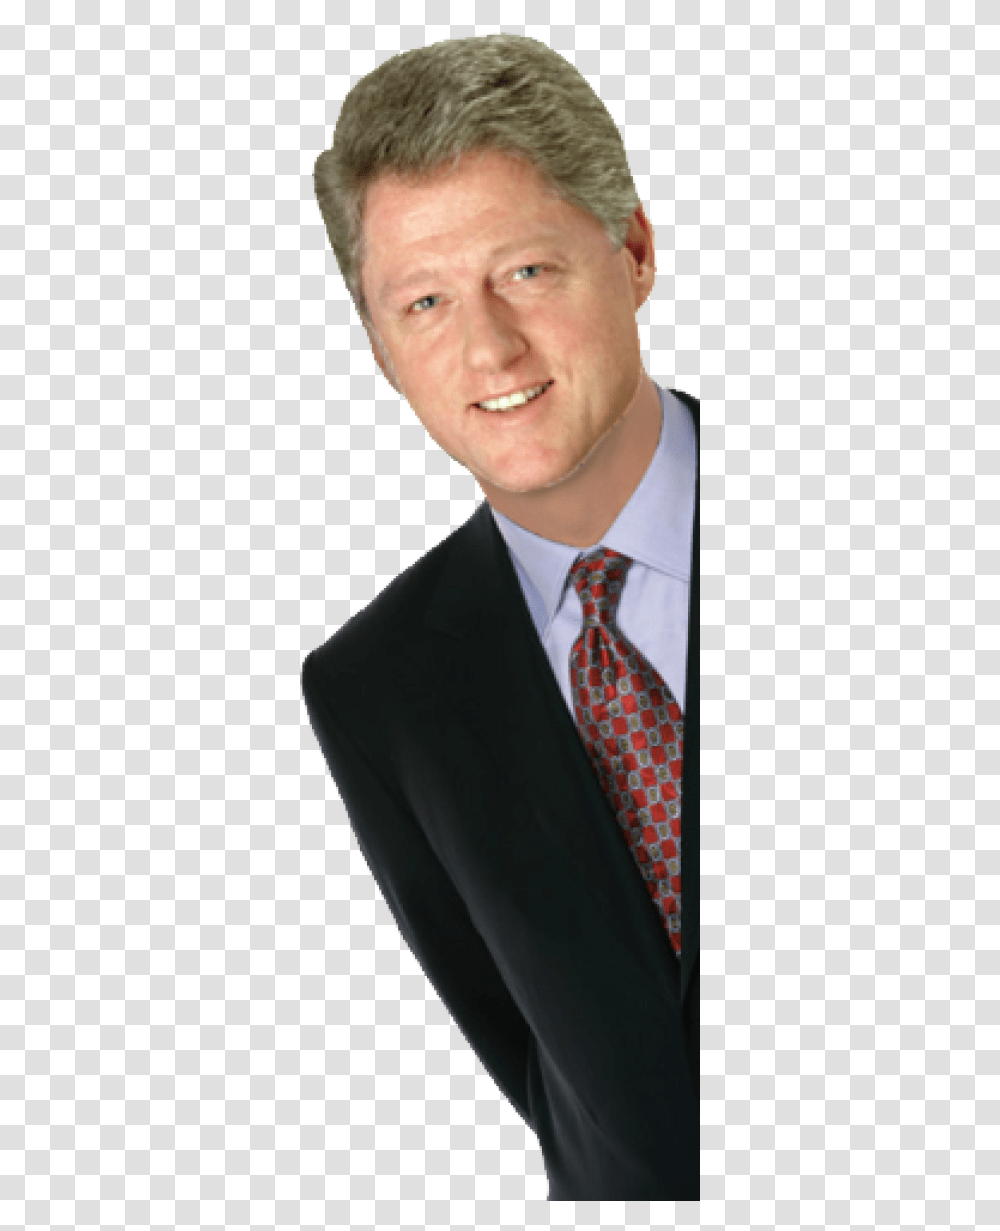 Bill Clinton, Tie, Accessories, Accessory, Suit Transparent Png